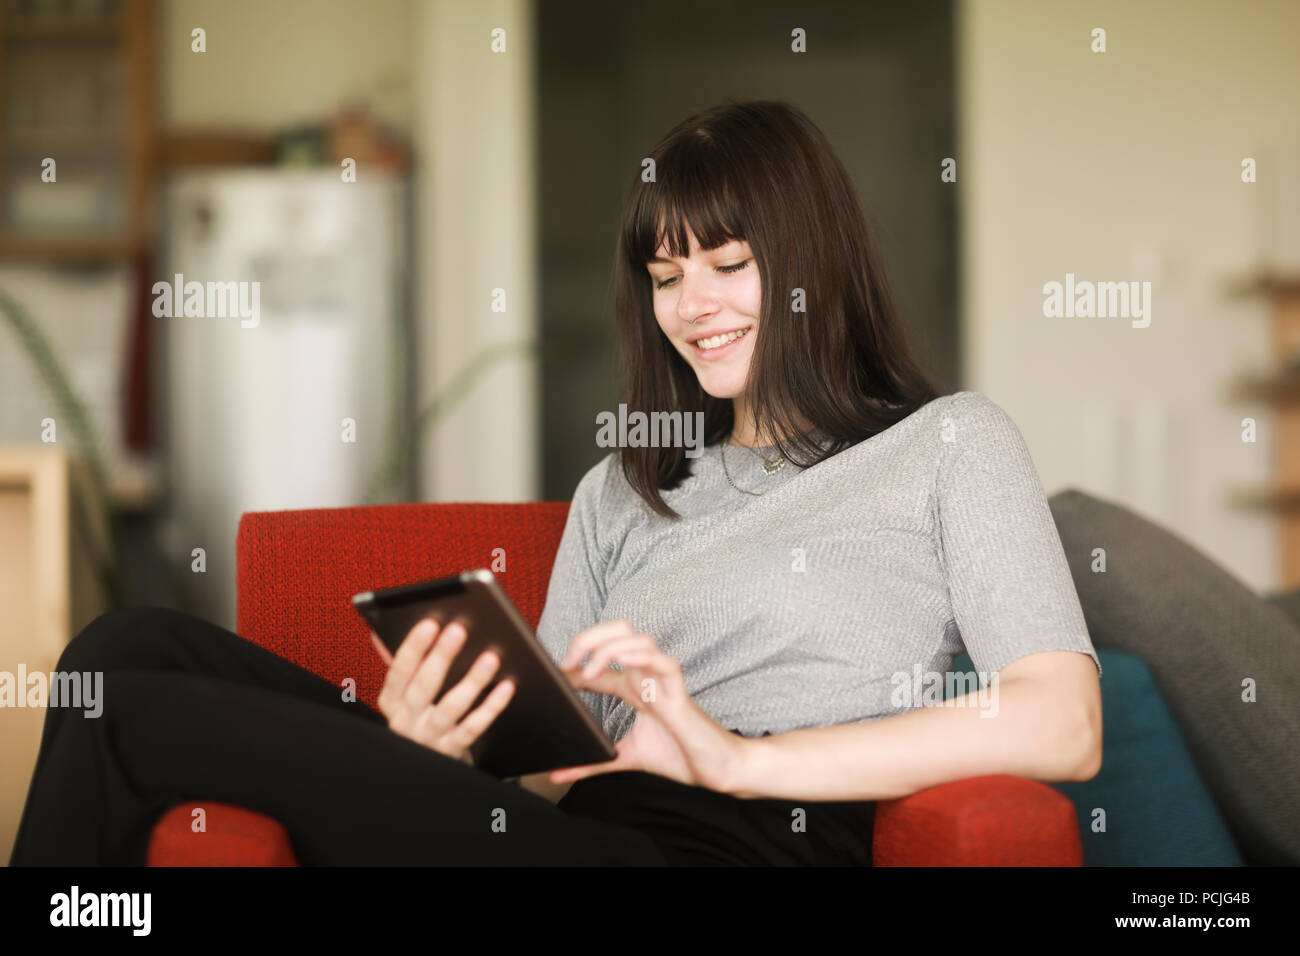 Femme assise dans un fauteuil à l'aide d'une tablette numérique Banque D'Images